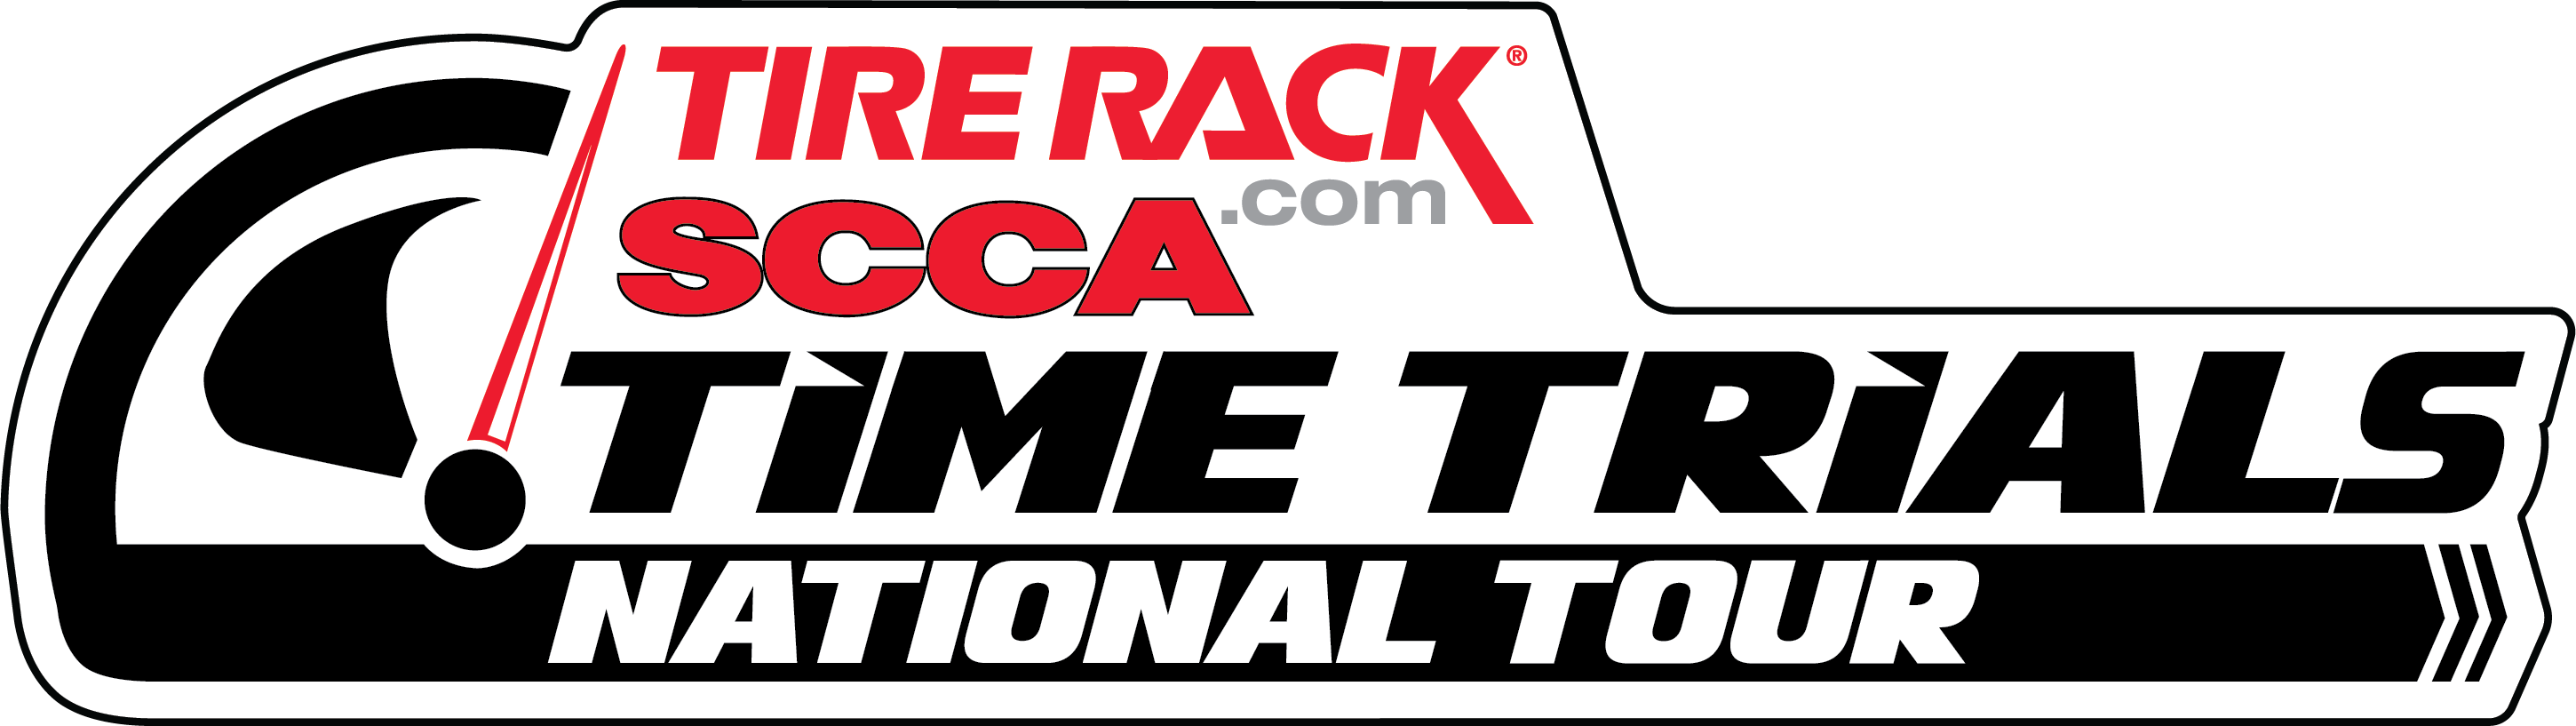 SCCA Tirerack.com Time Trials National Tour